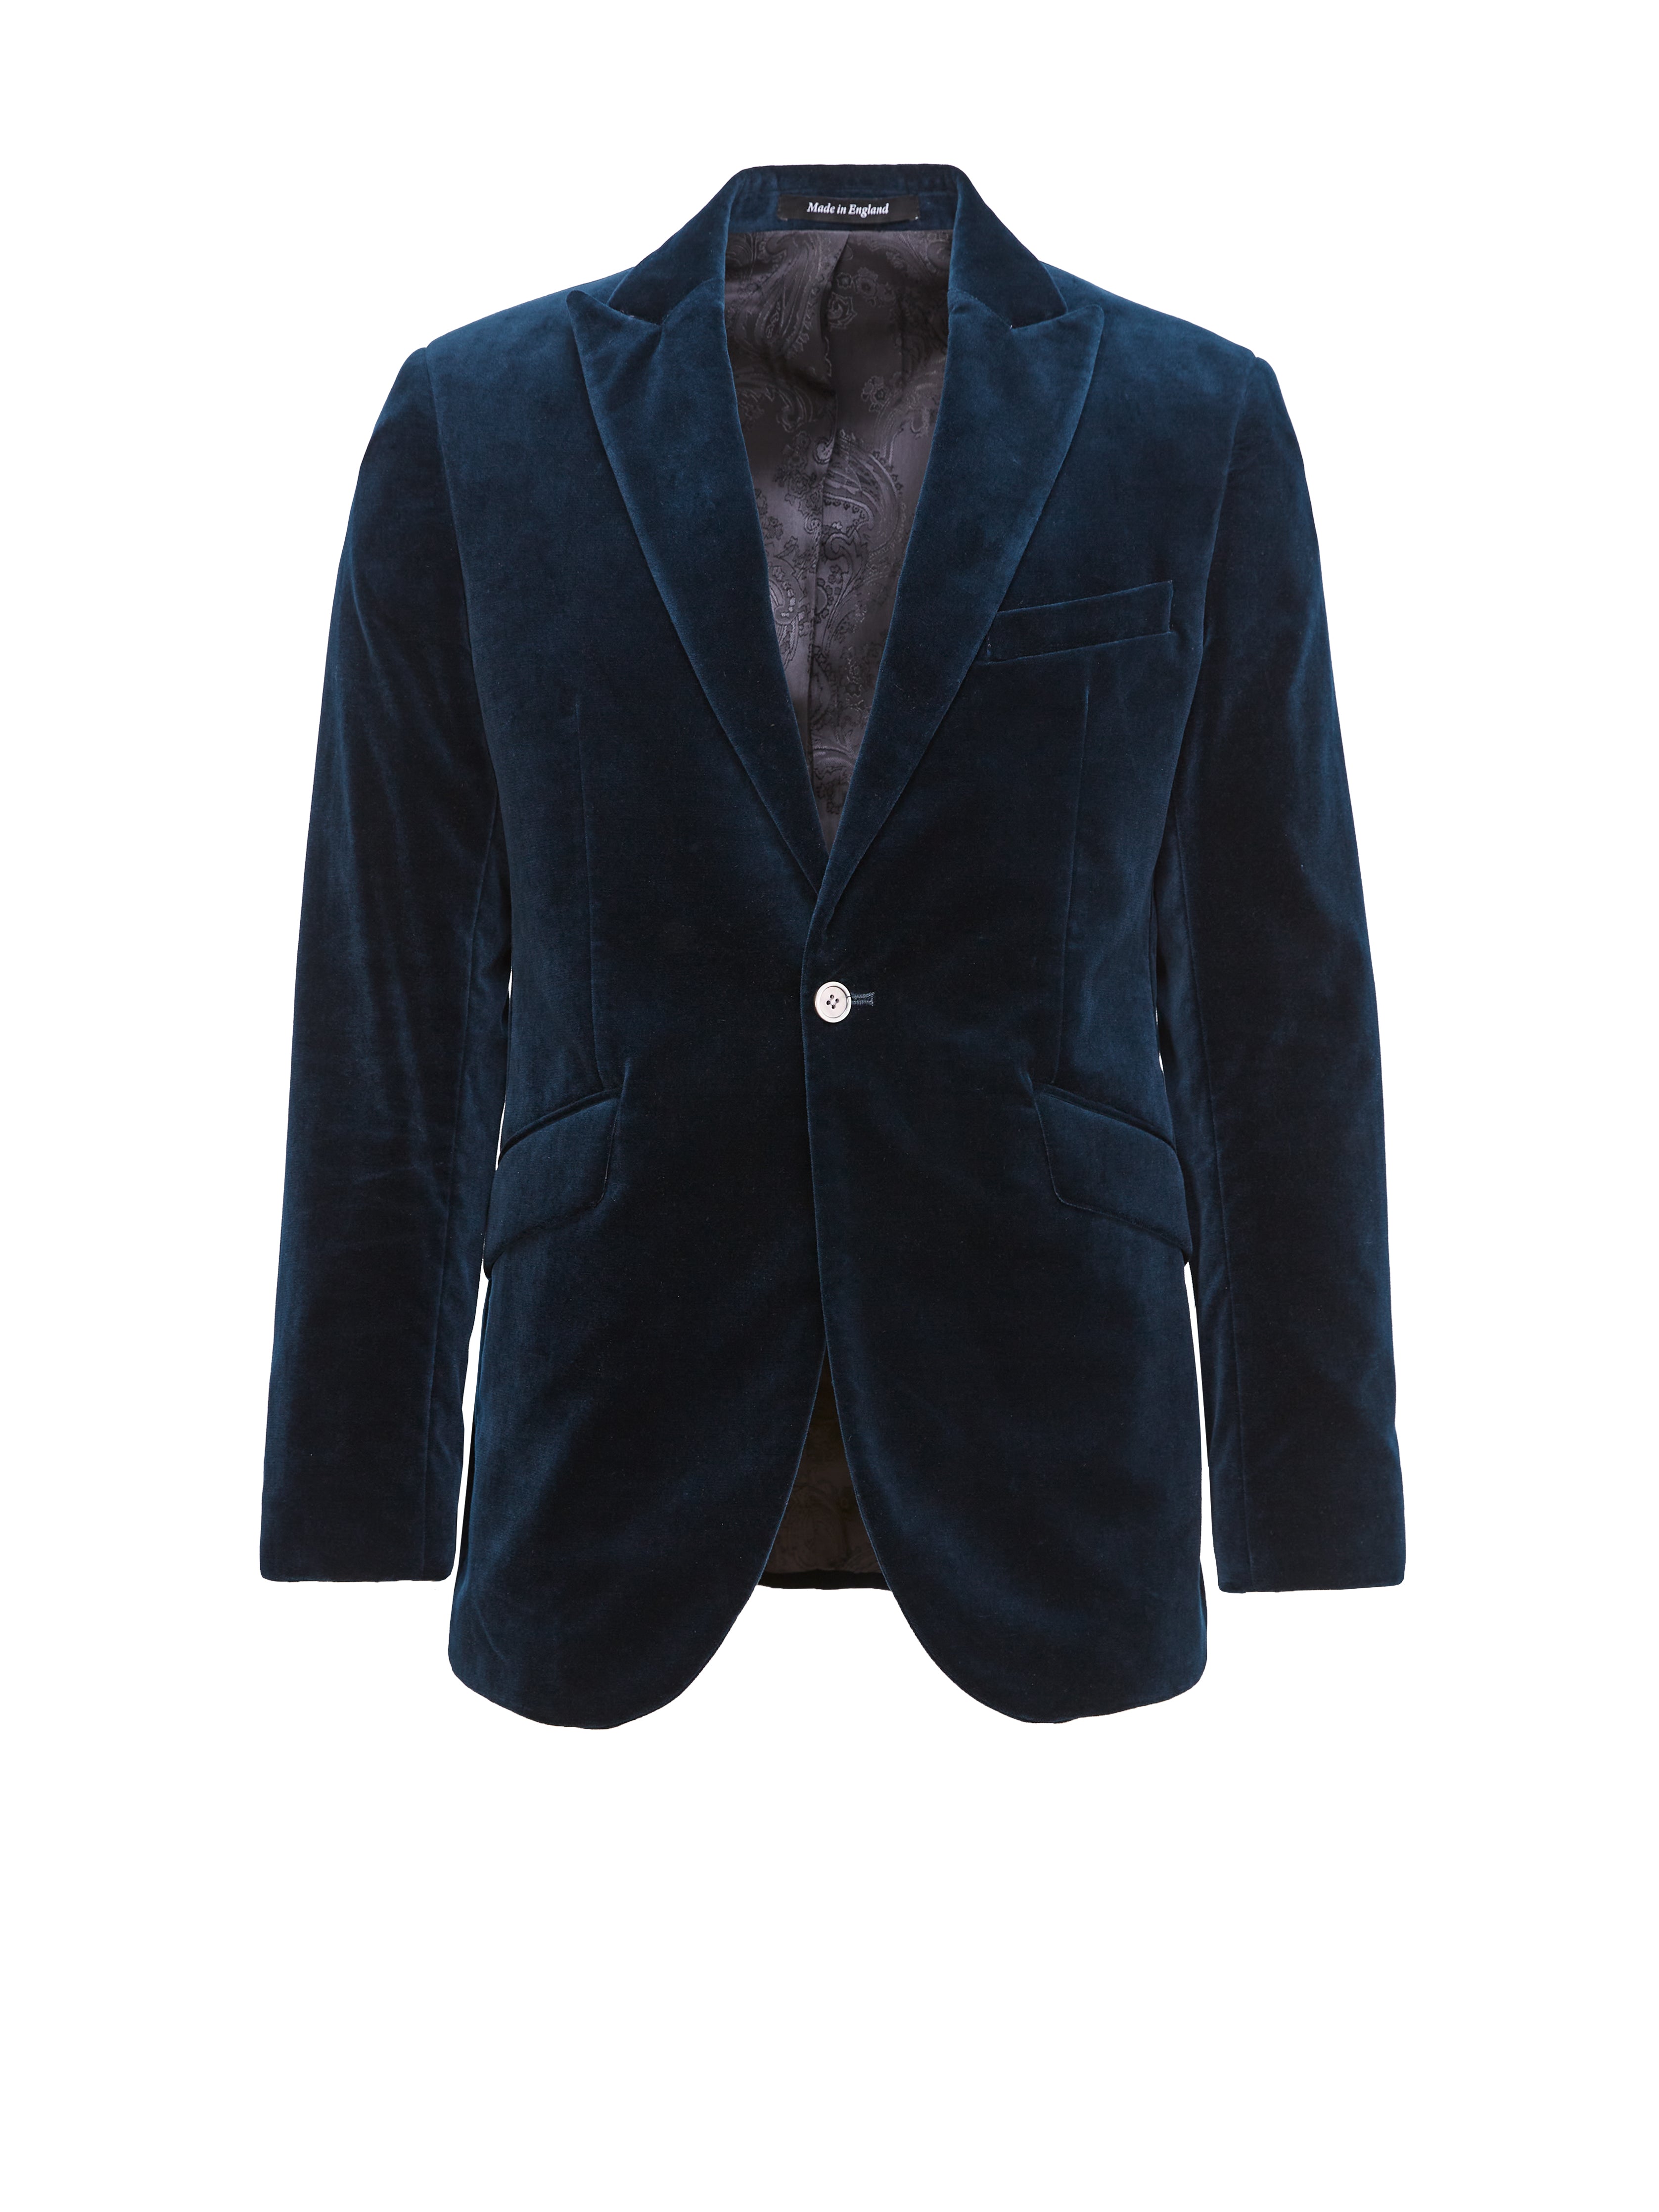 Sapphire Blue Velvet Newport Jacket